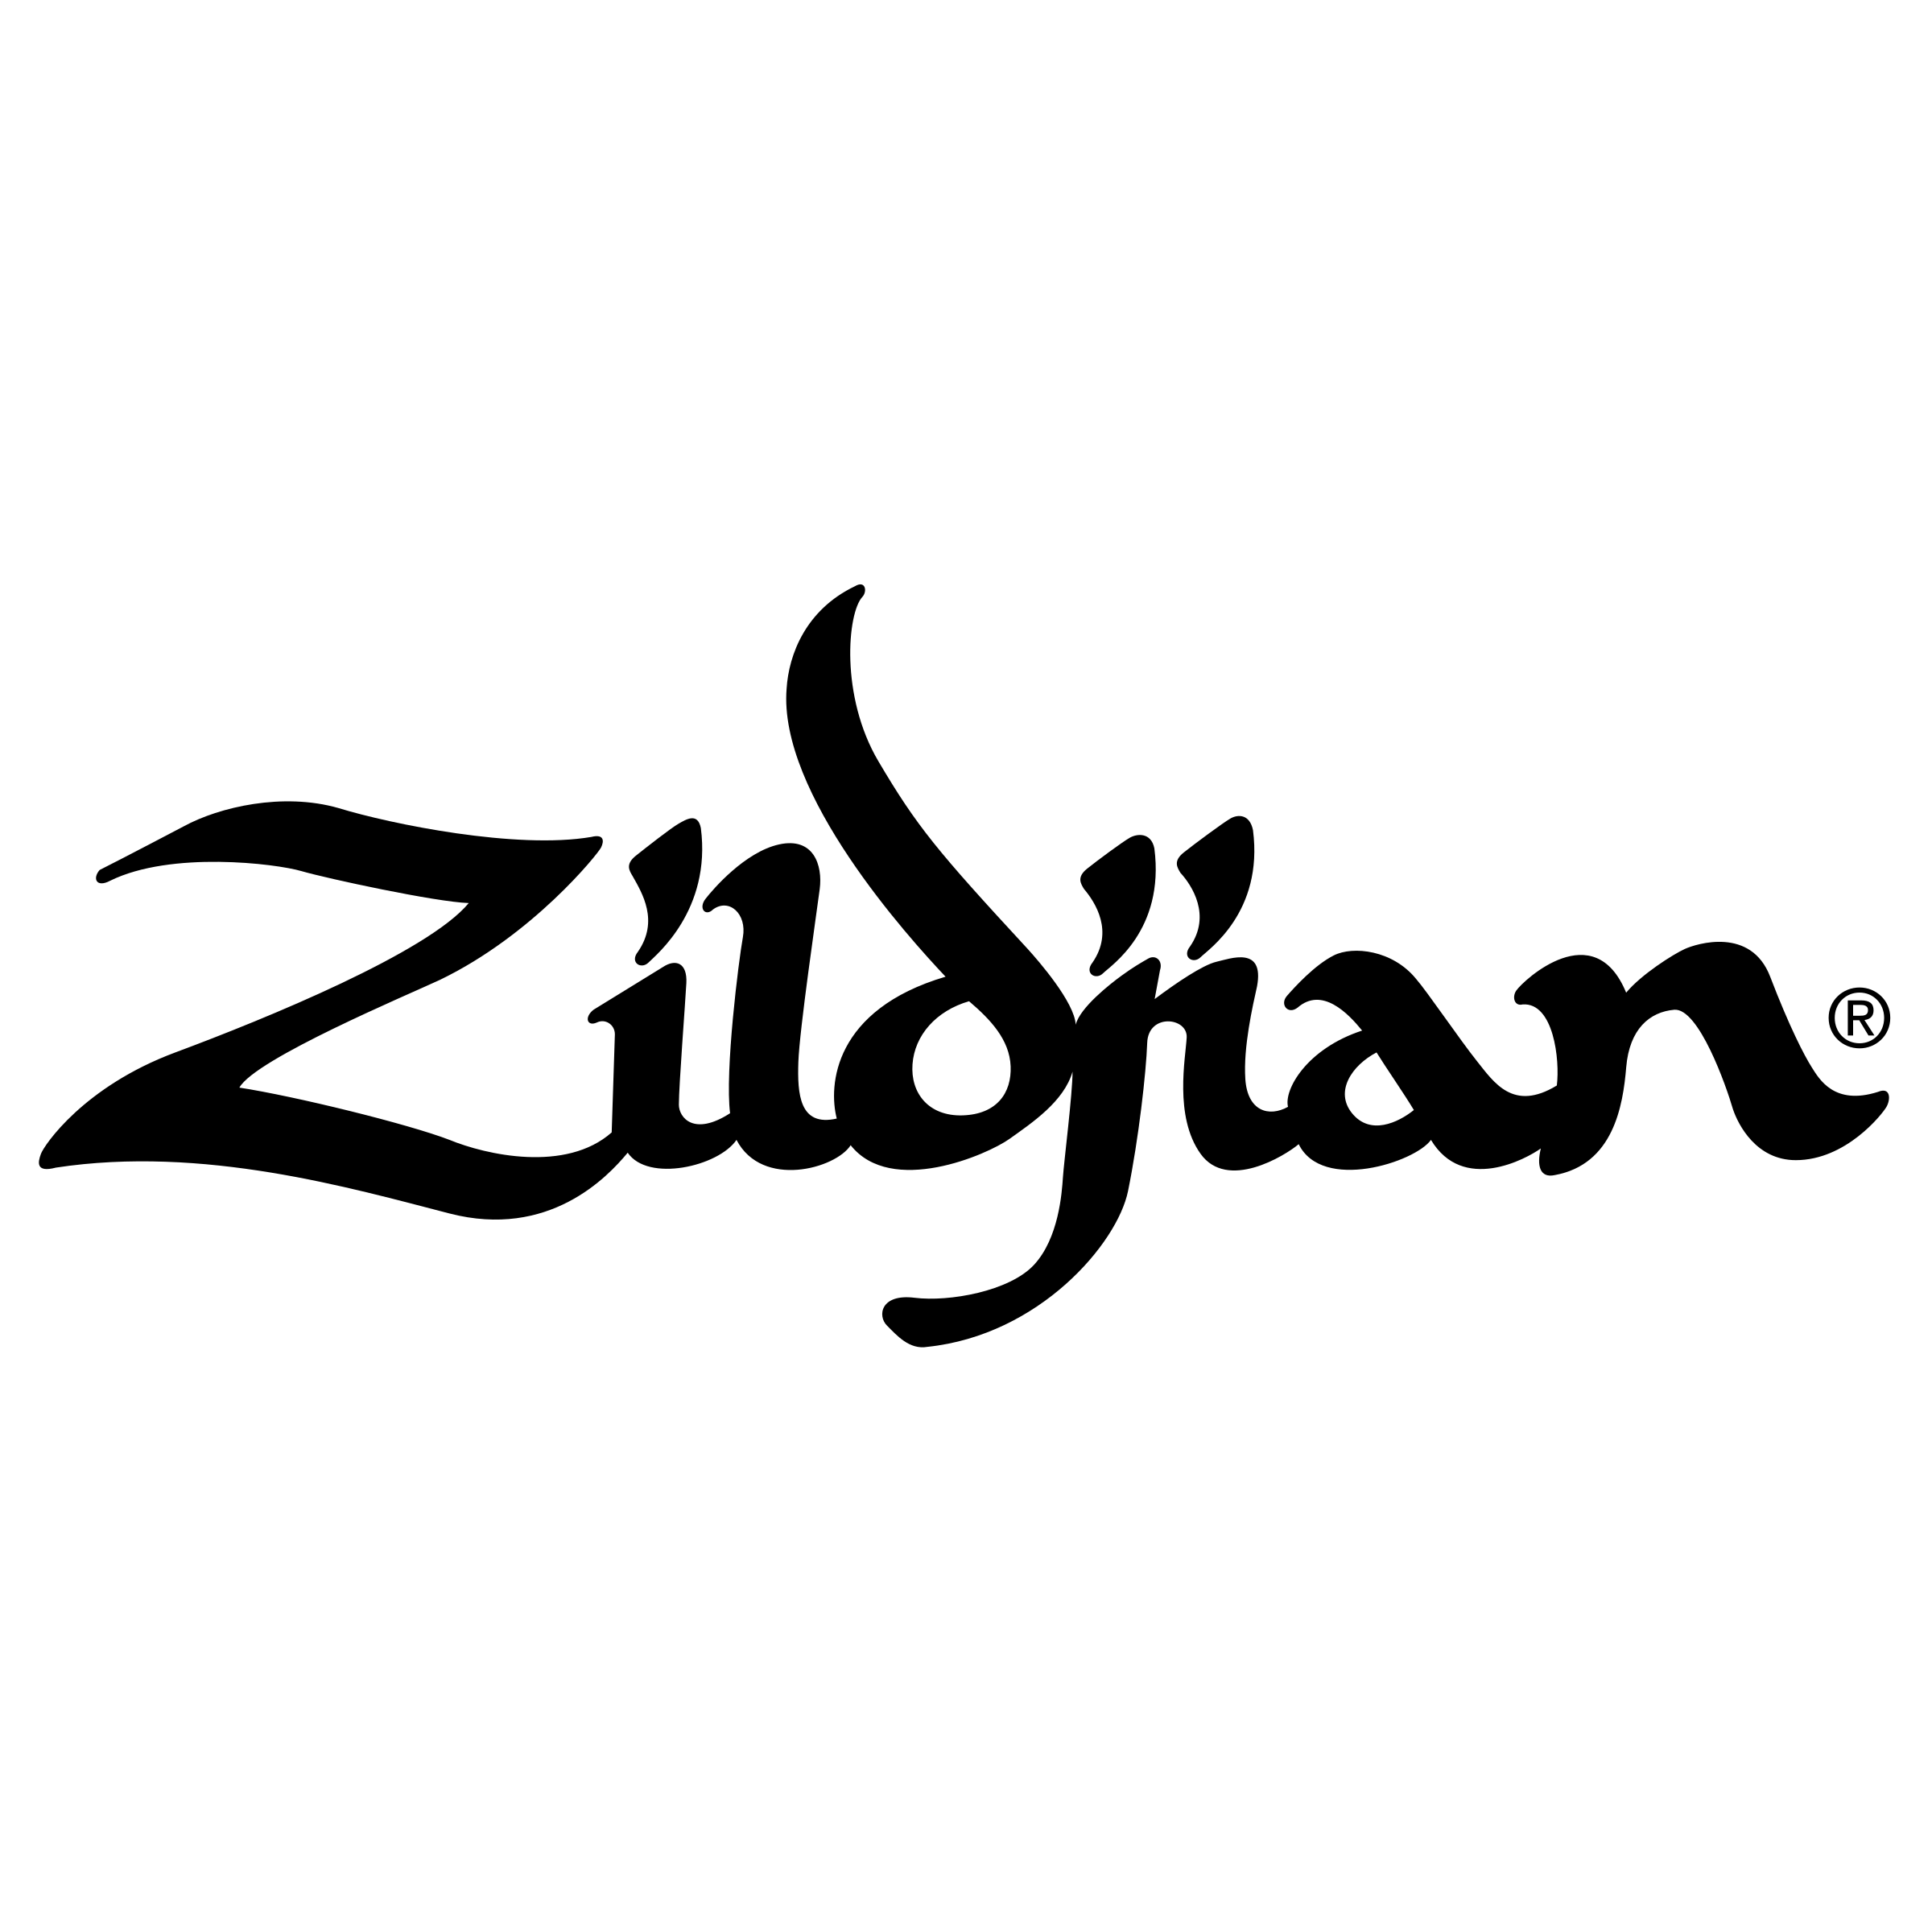 zildjian-logo-png-transparent.png